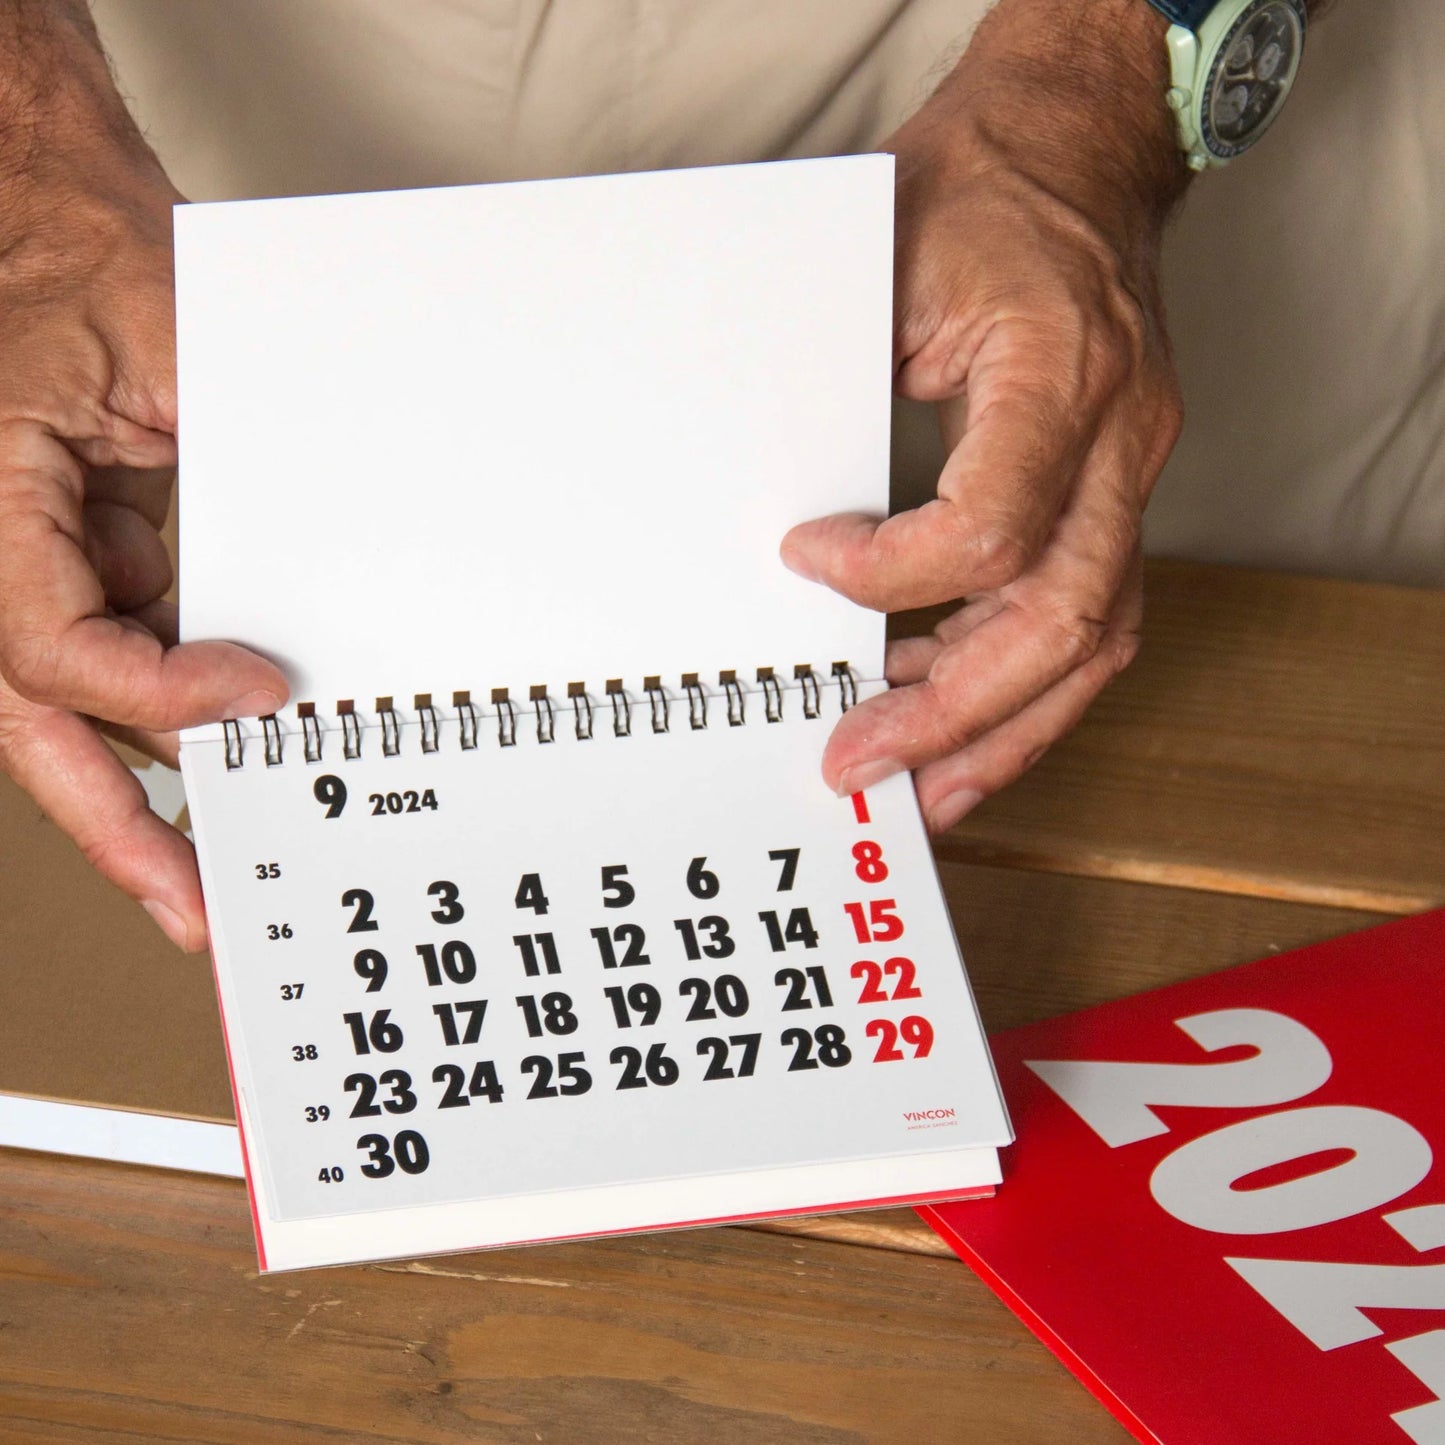 Vinçon Desk Calendar 2024